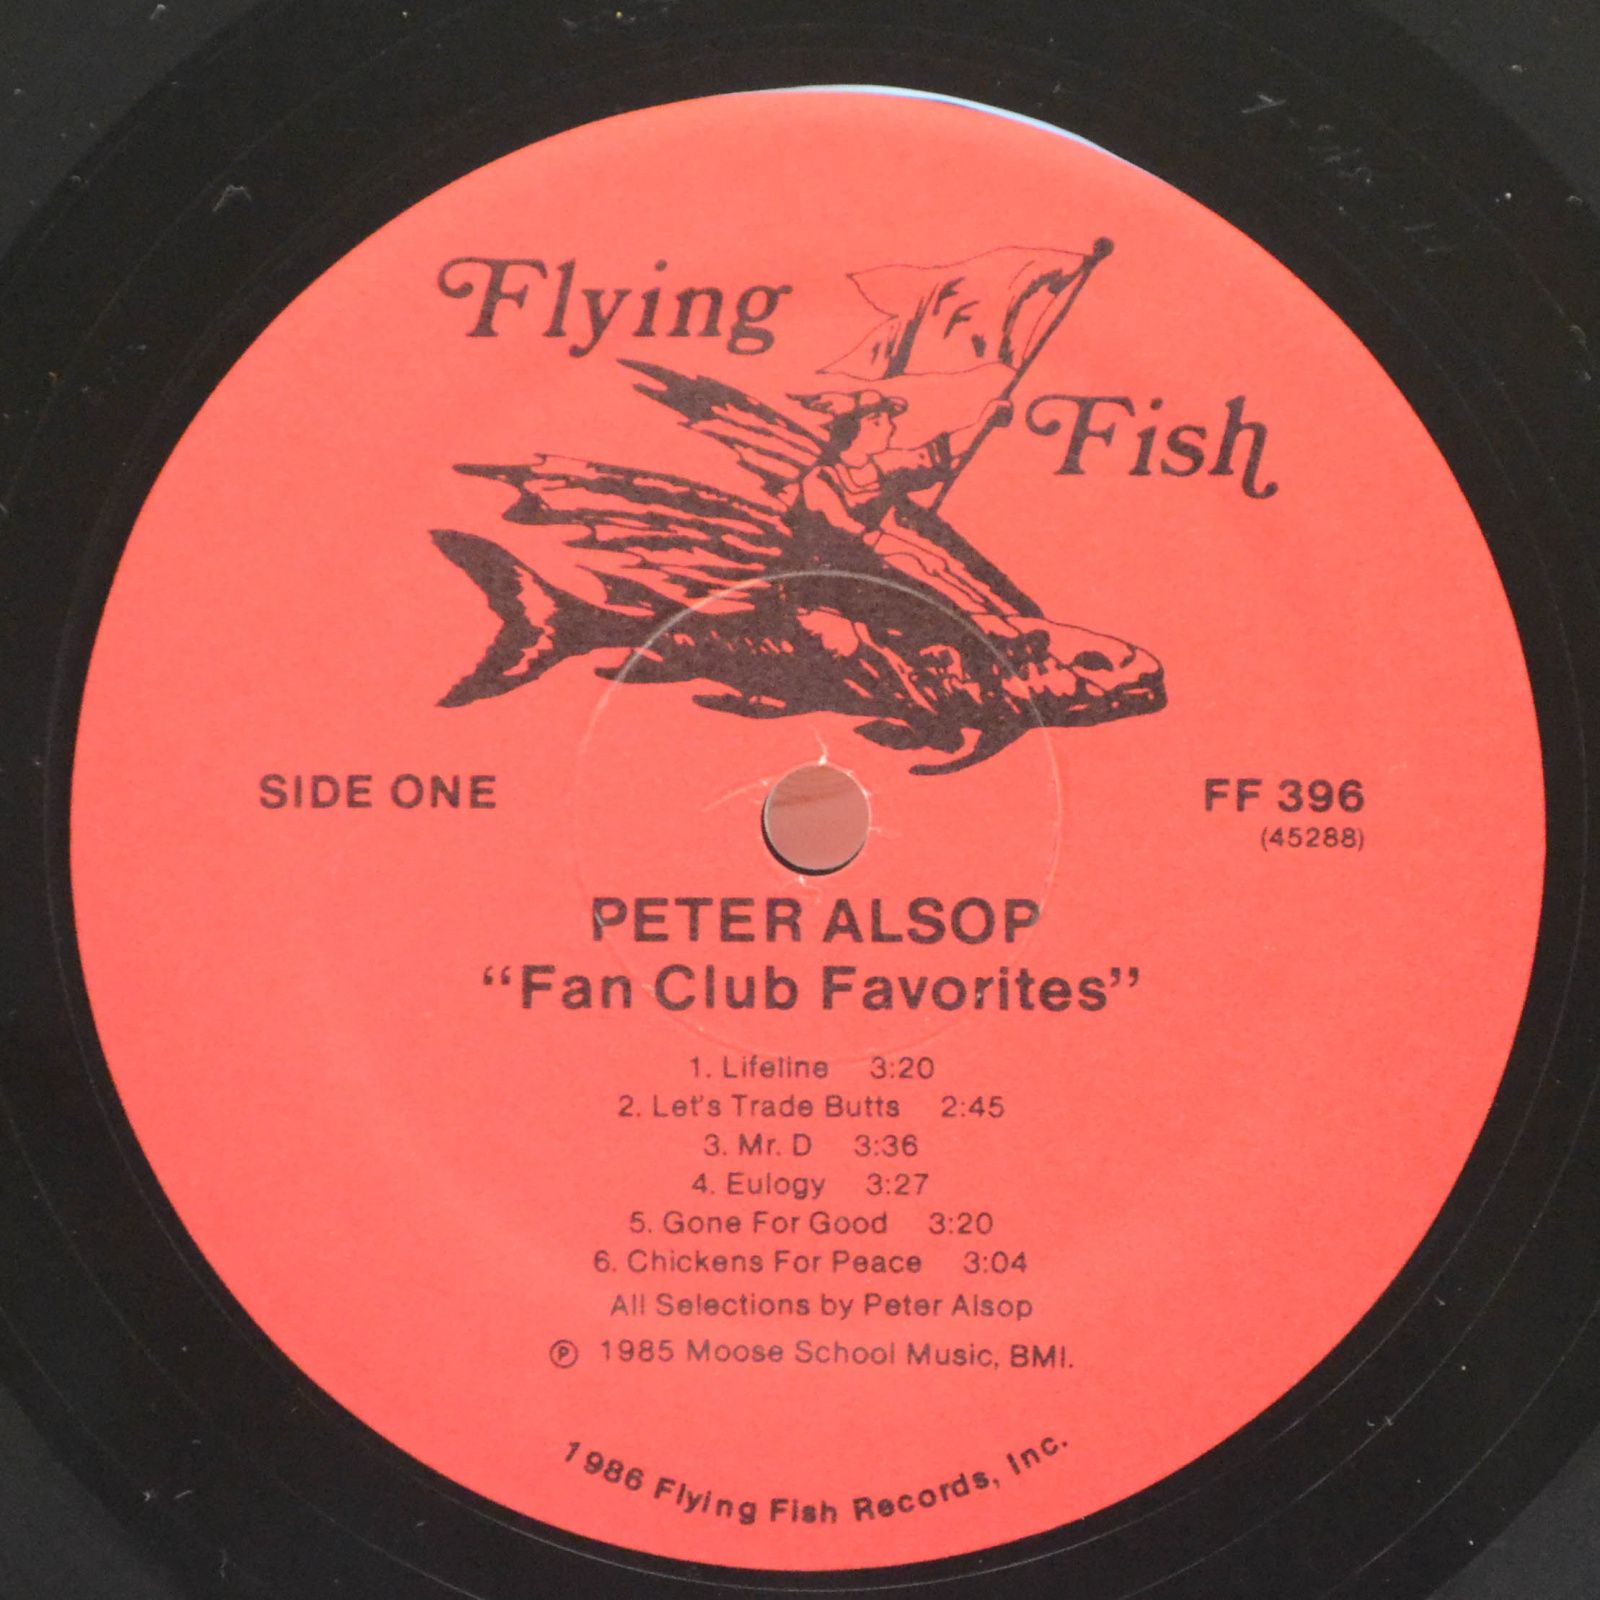 Peter Alsop — Fan Club Favorites, 1986